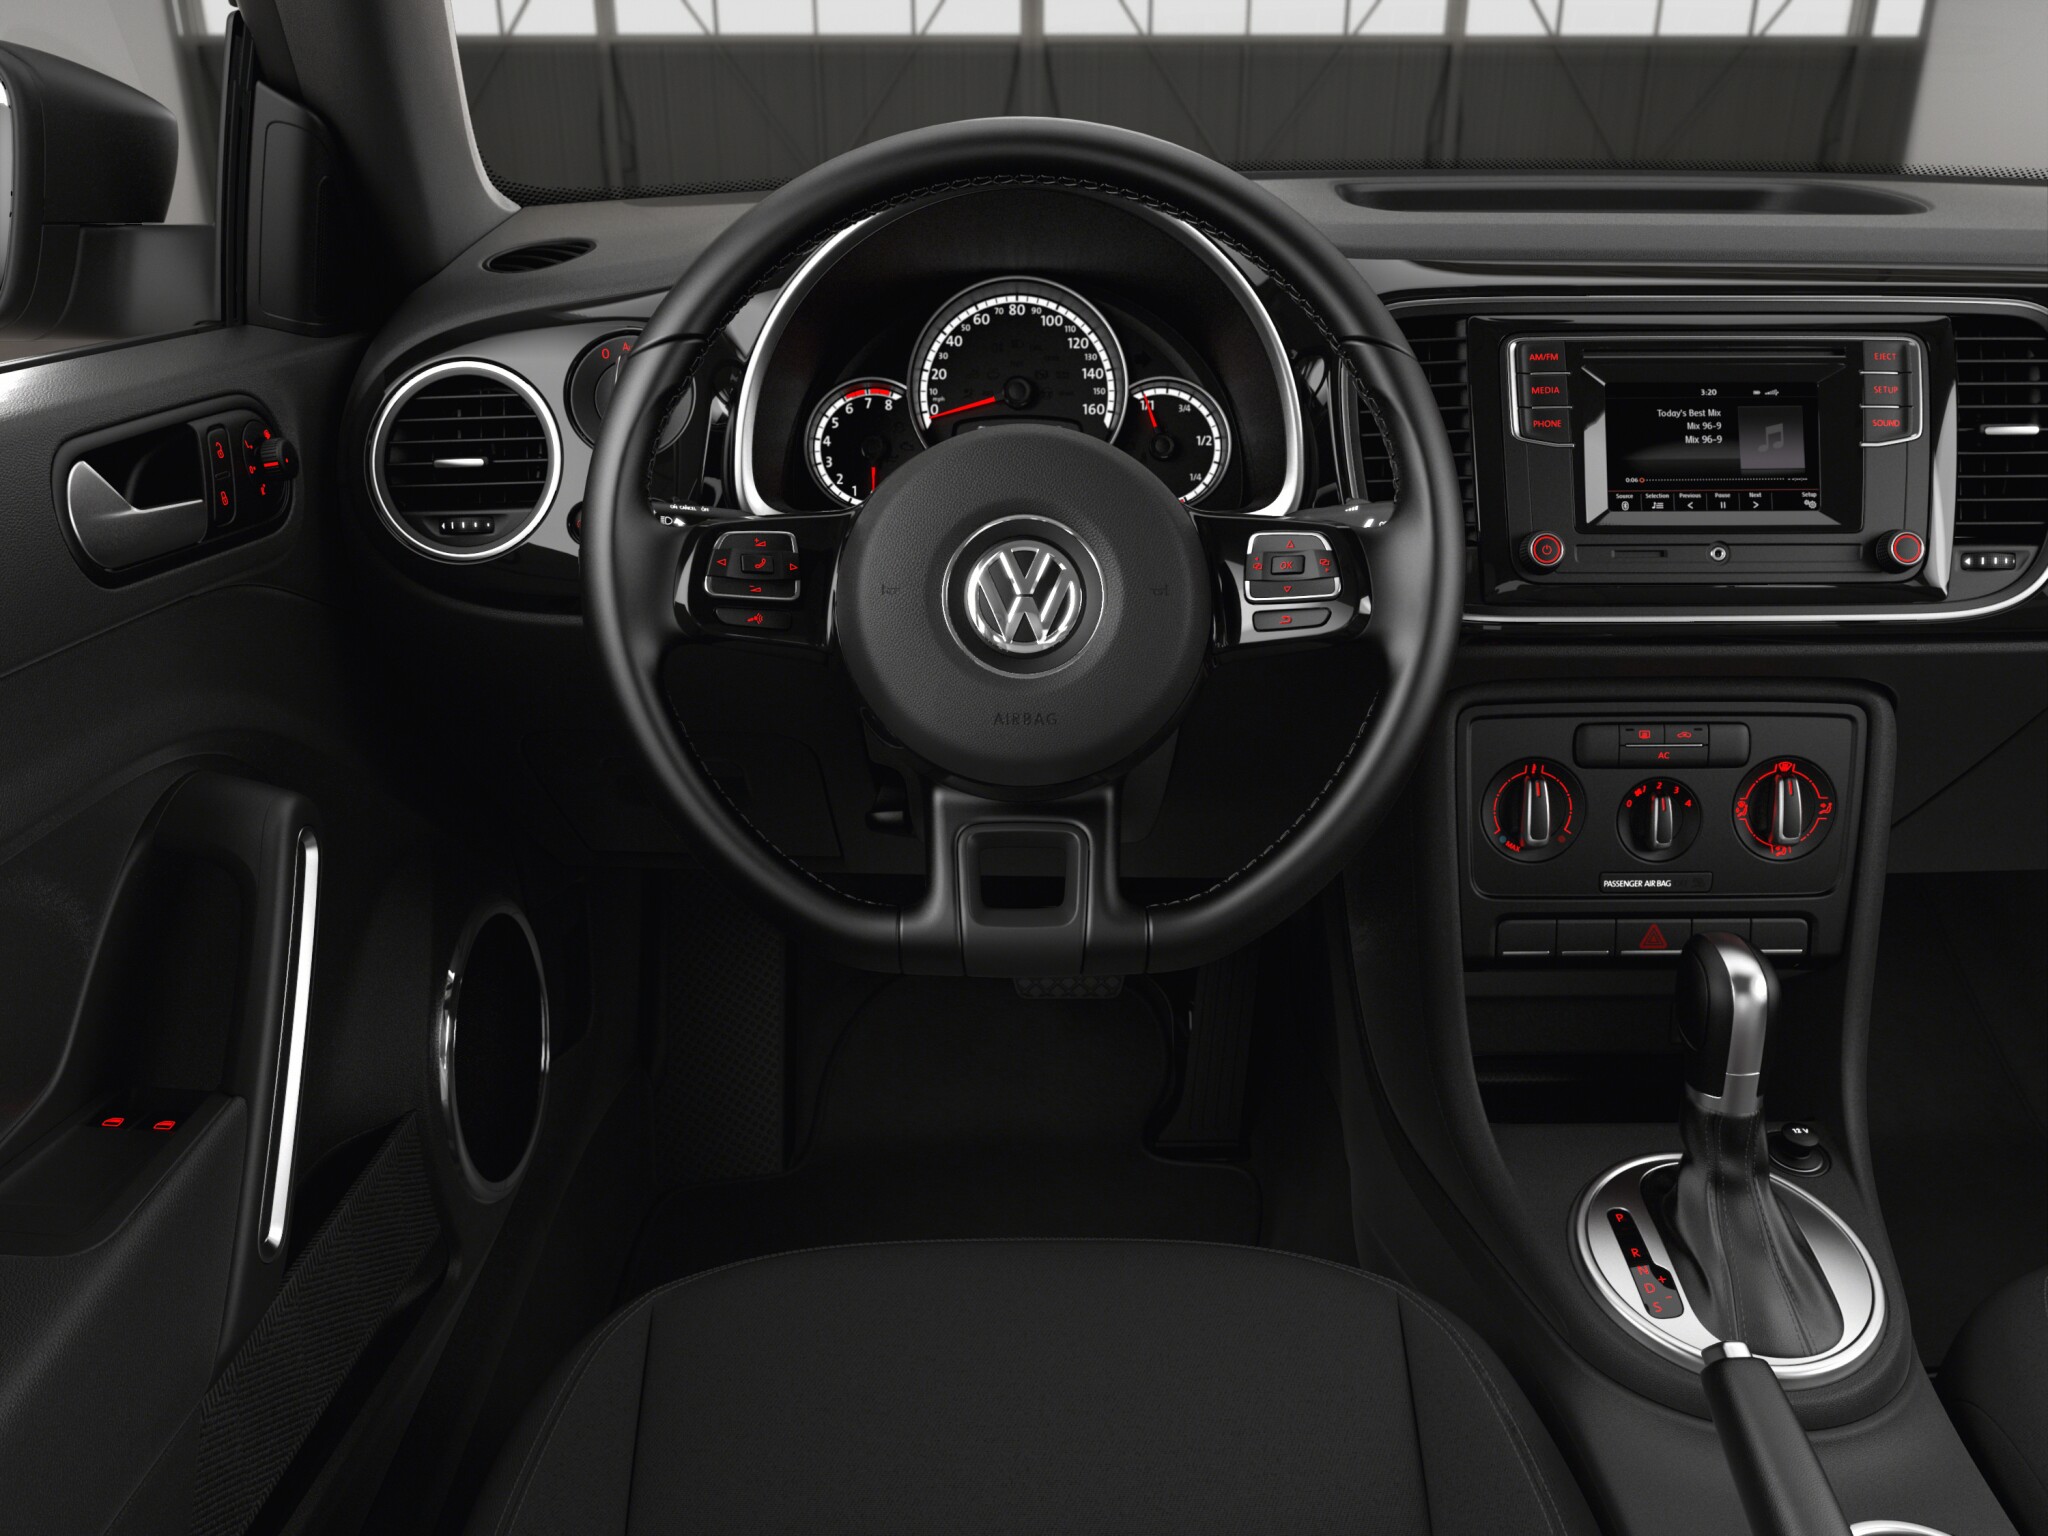 Volkswagen Beetle S interior front view